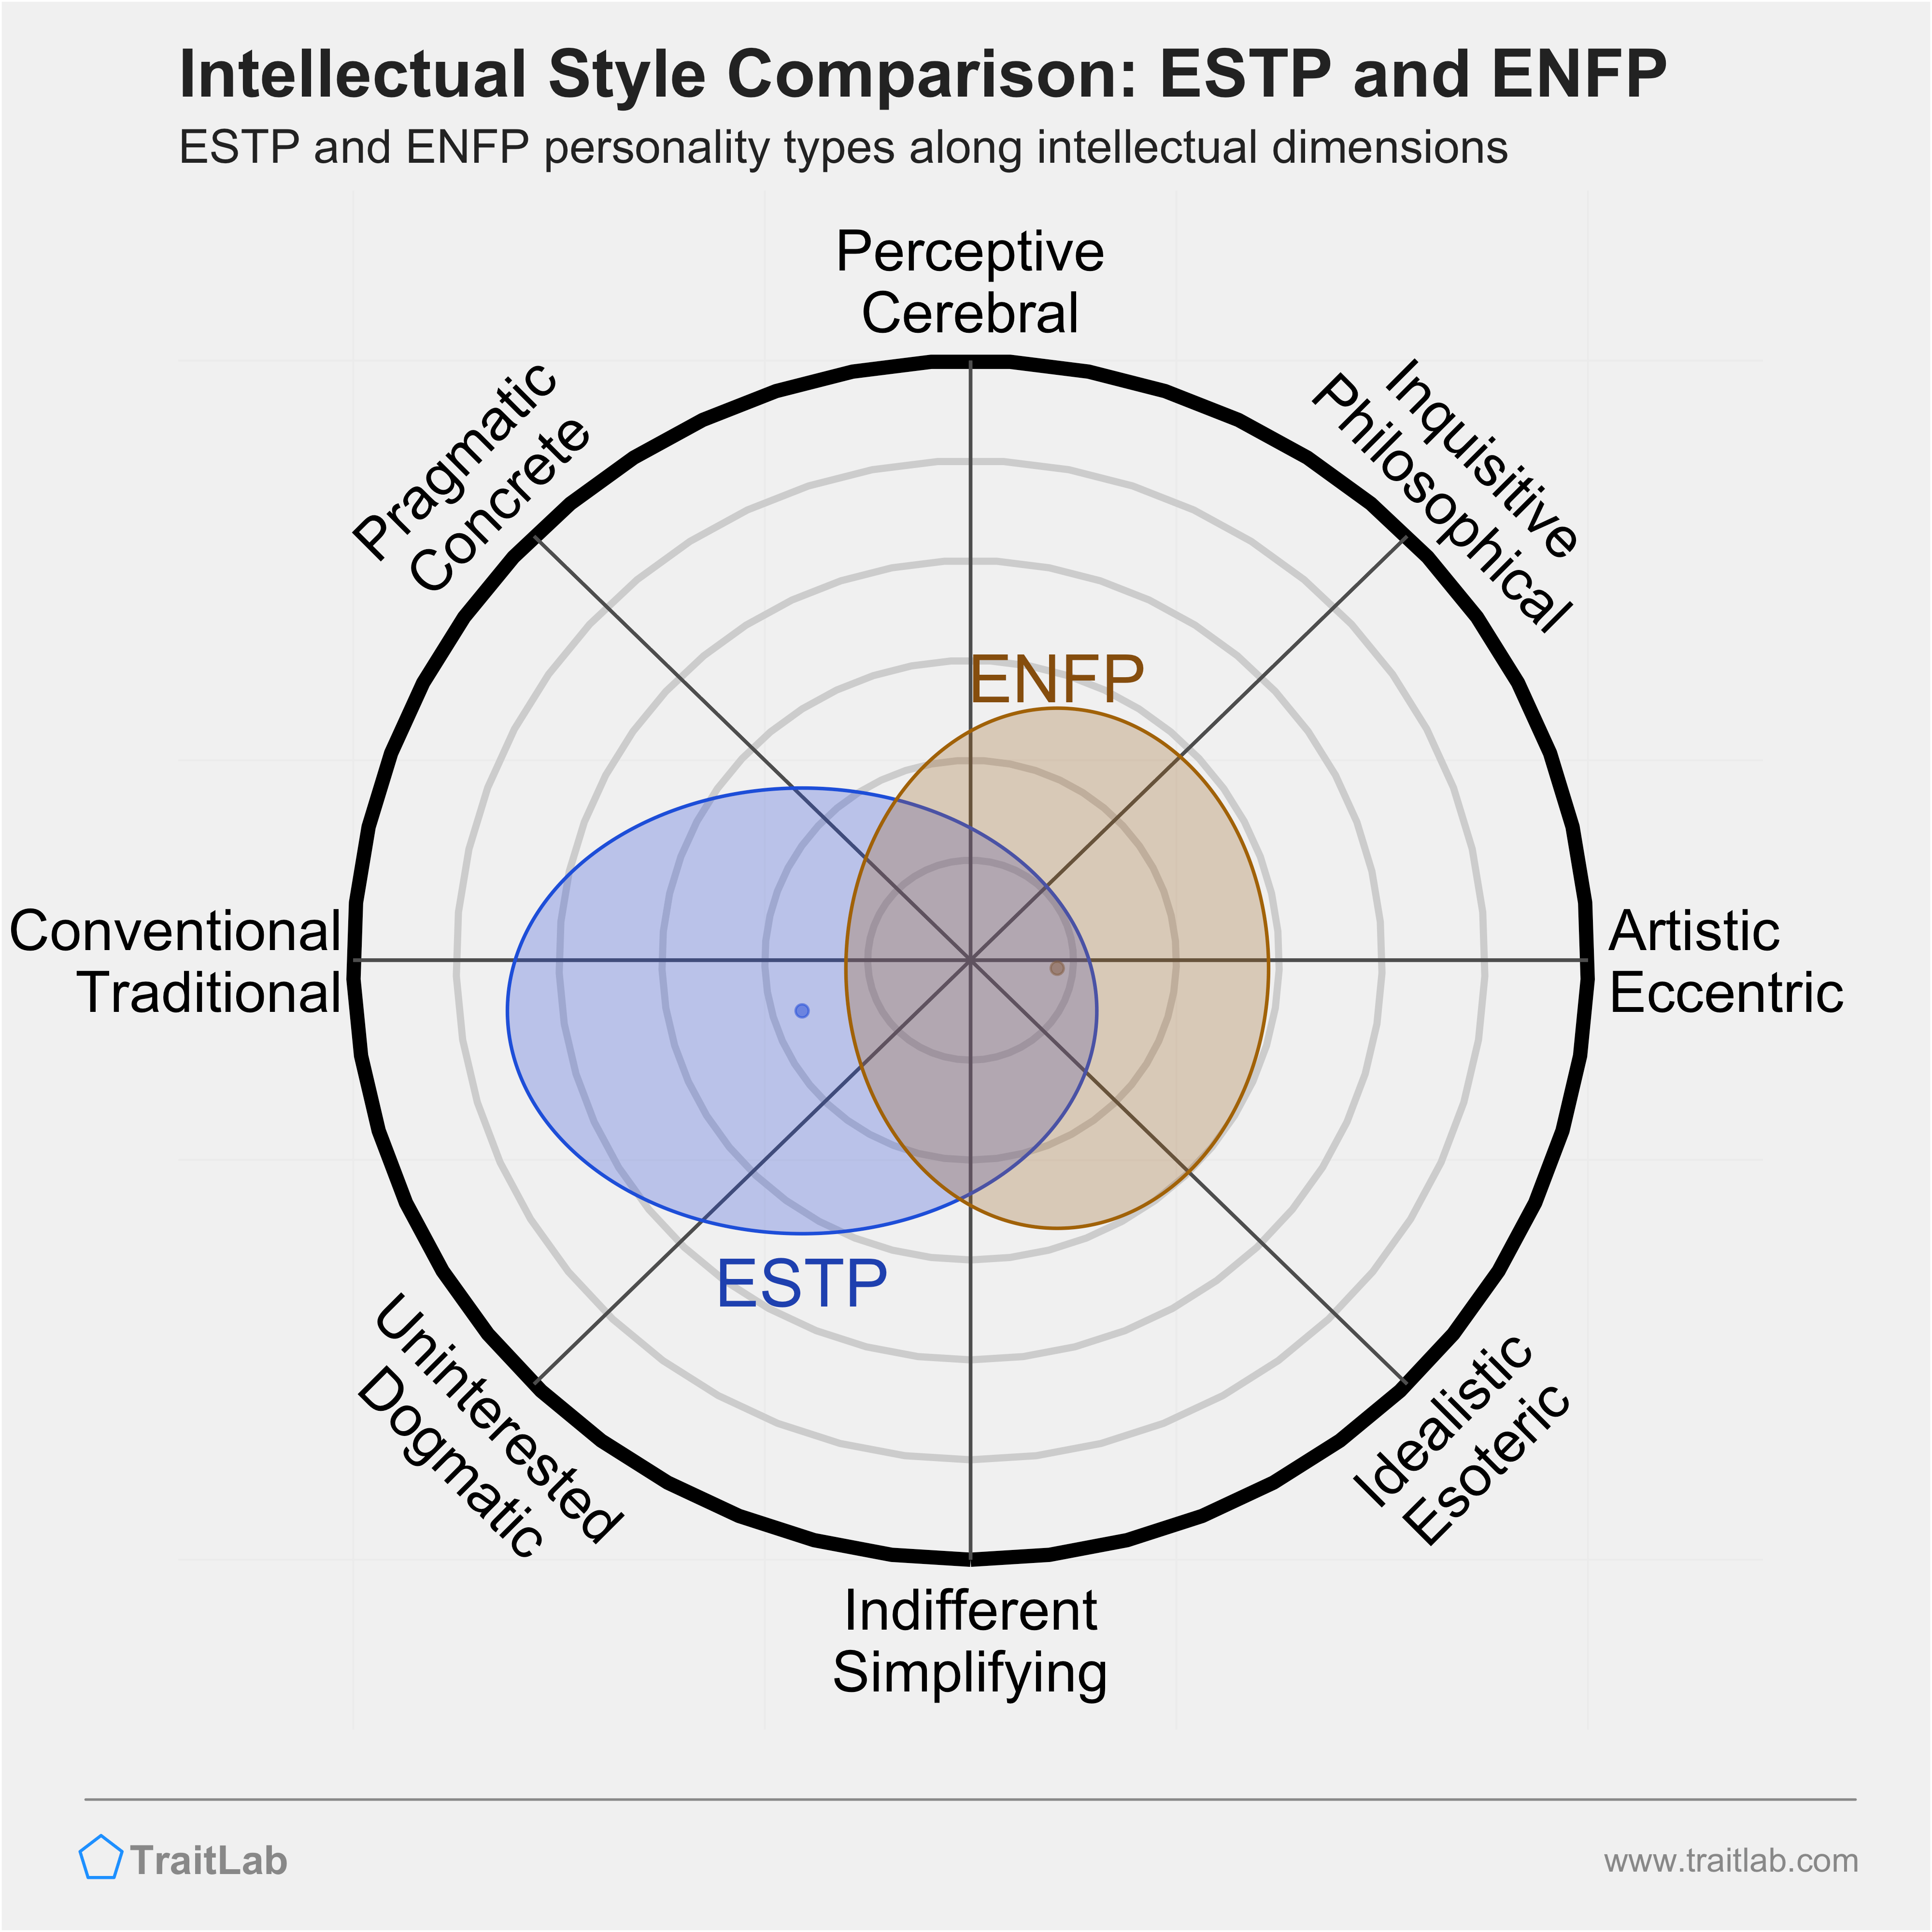 ESTP and ENFP comparison across intellectual dimensions